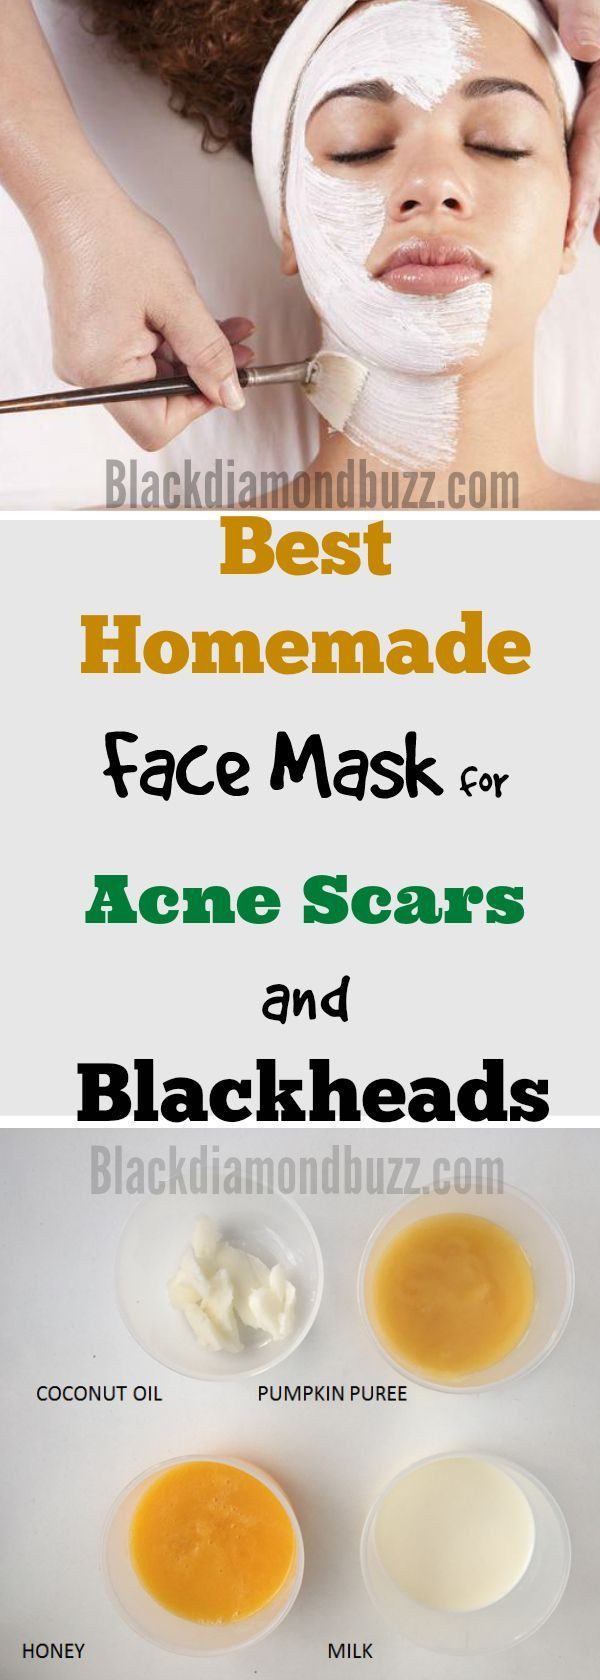 Acne Facial Mask DIY
 DIY Face Mask for Acne